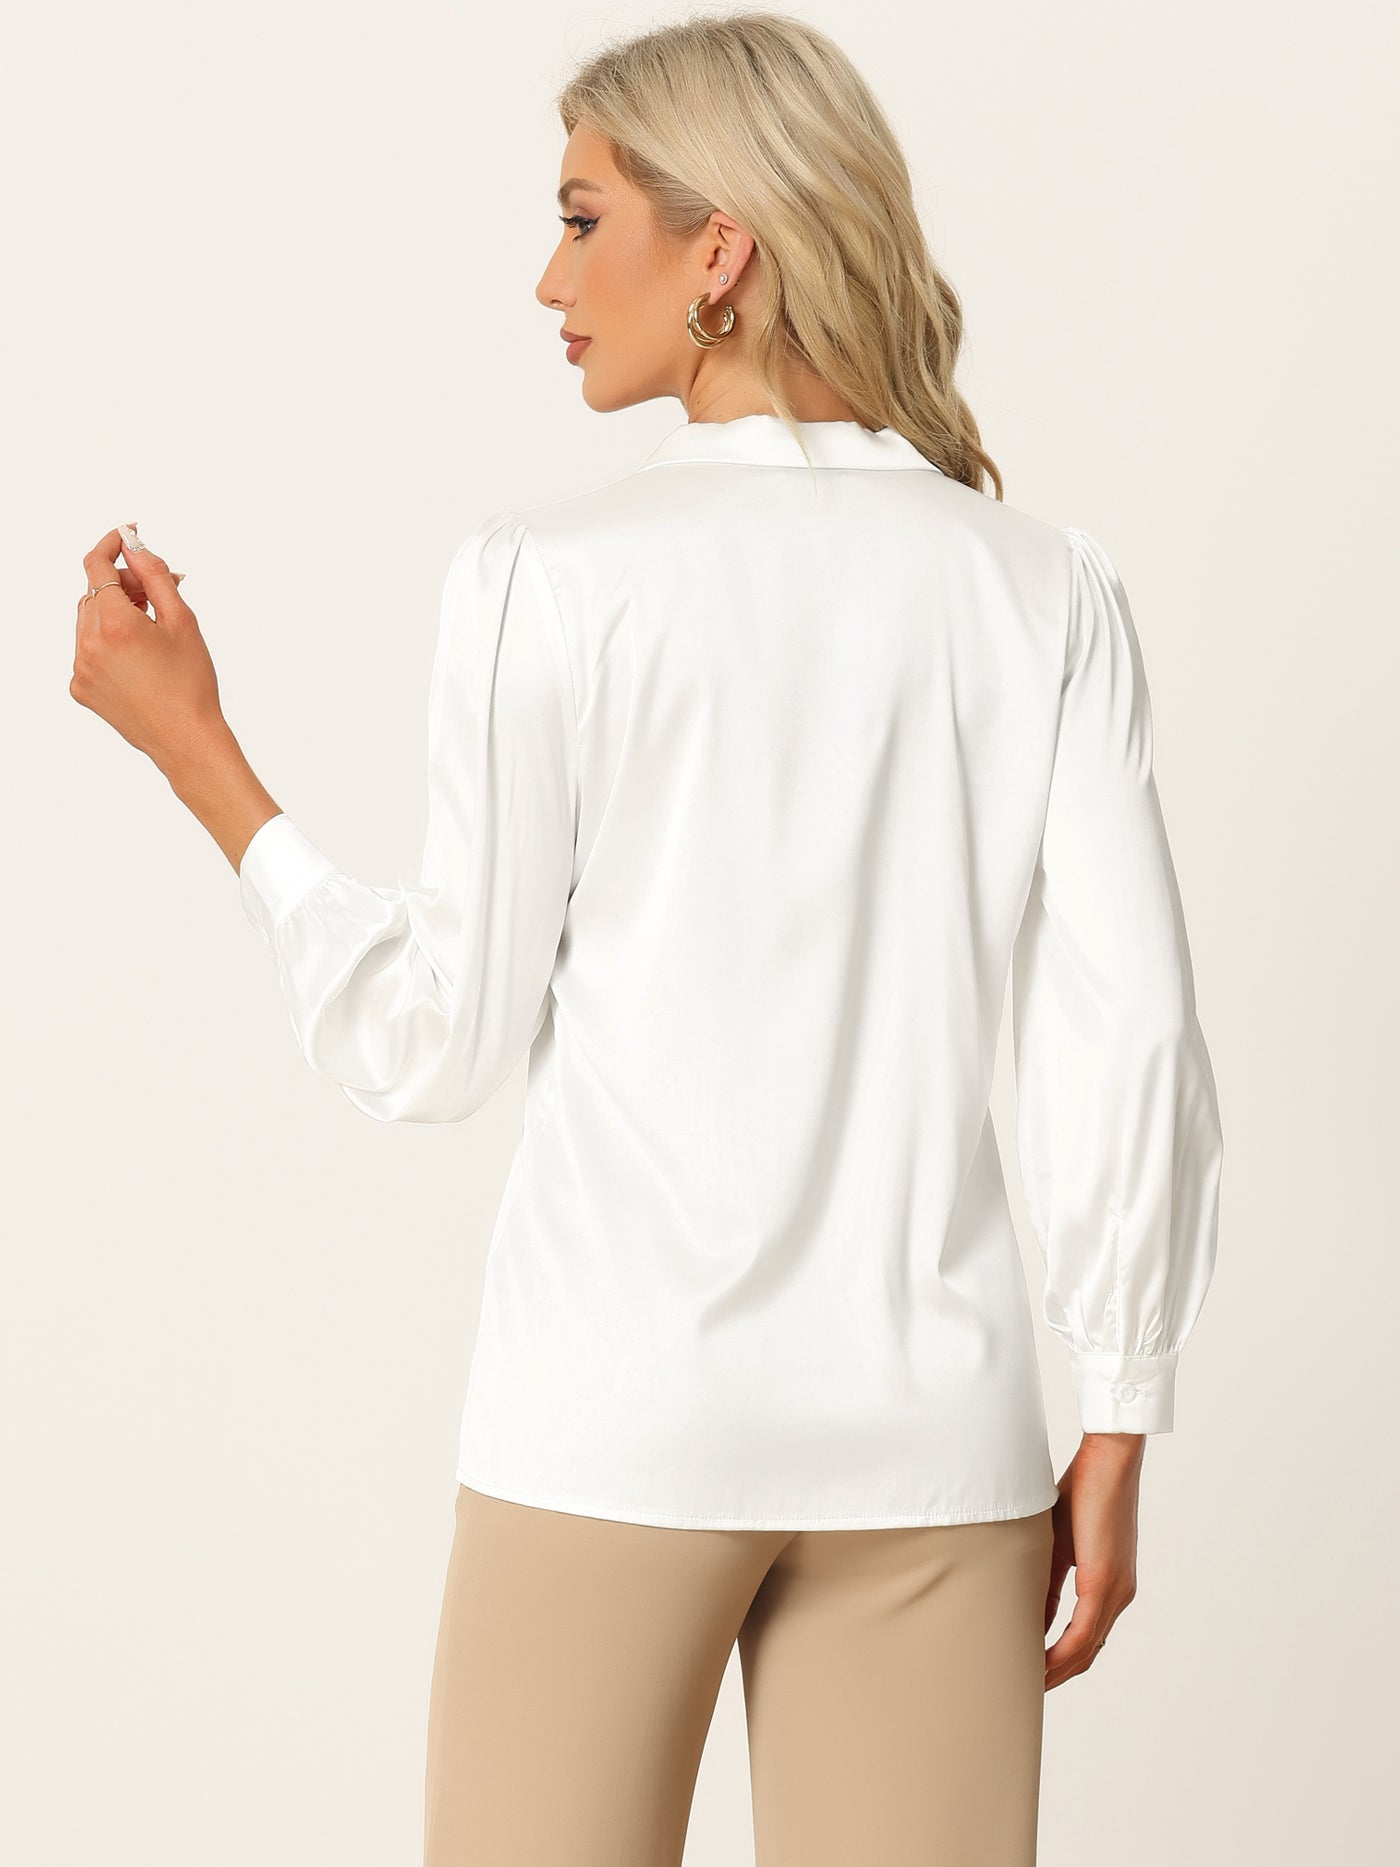 Allegra K Work Business Casual Button Down Satin Long Sleeve Shirt